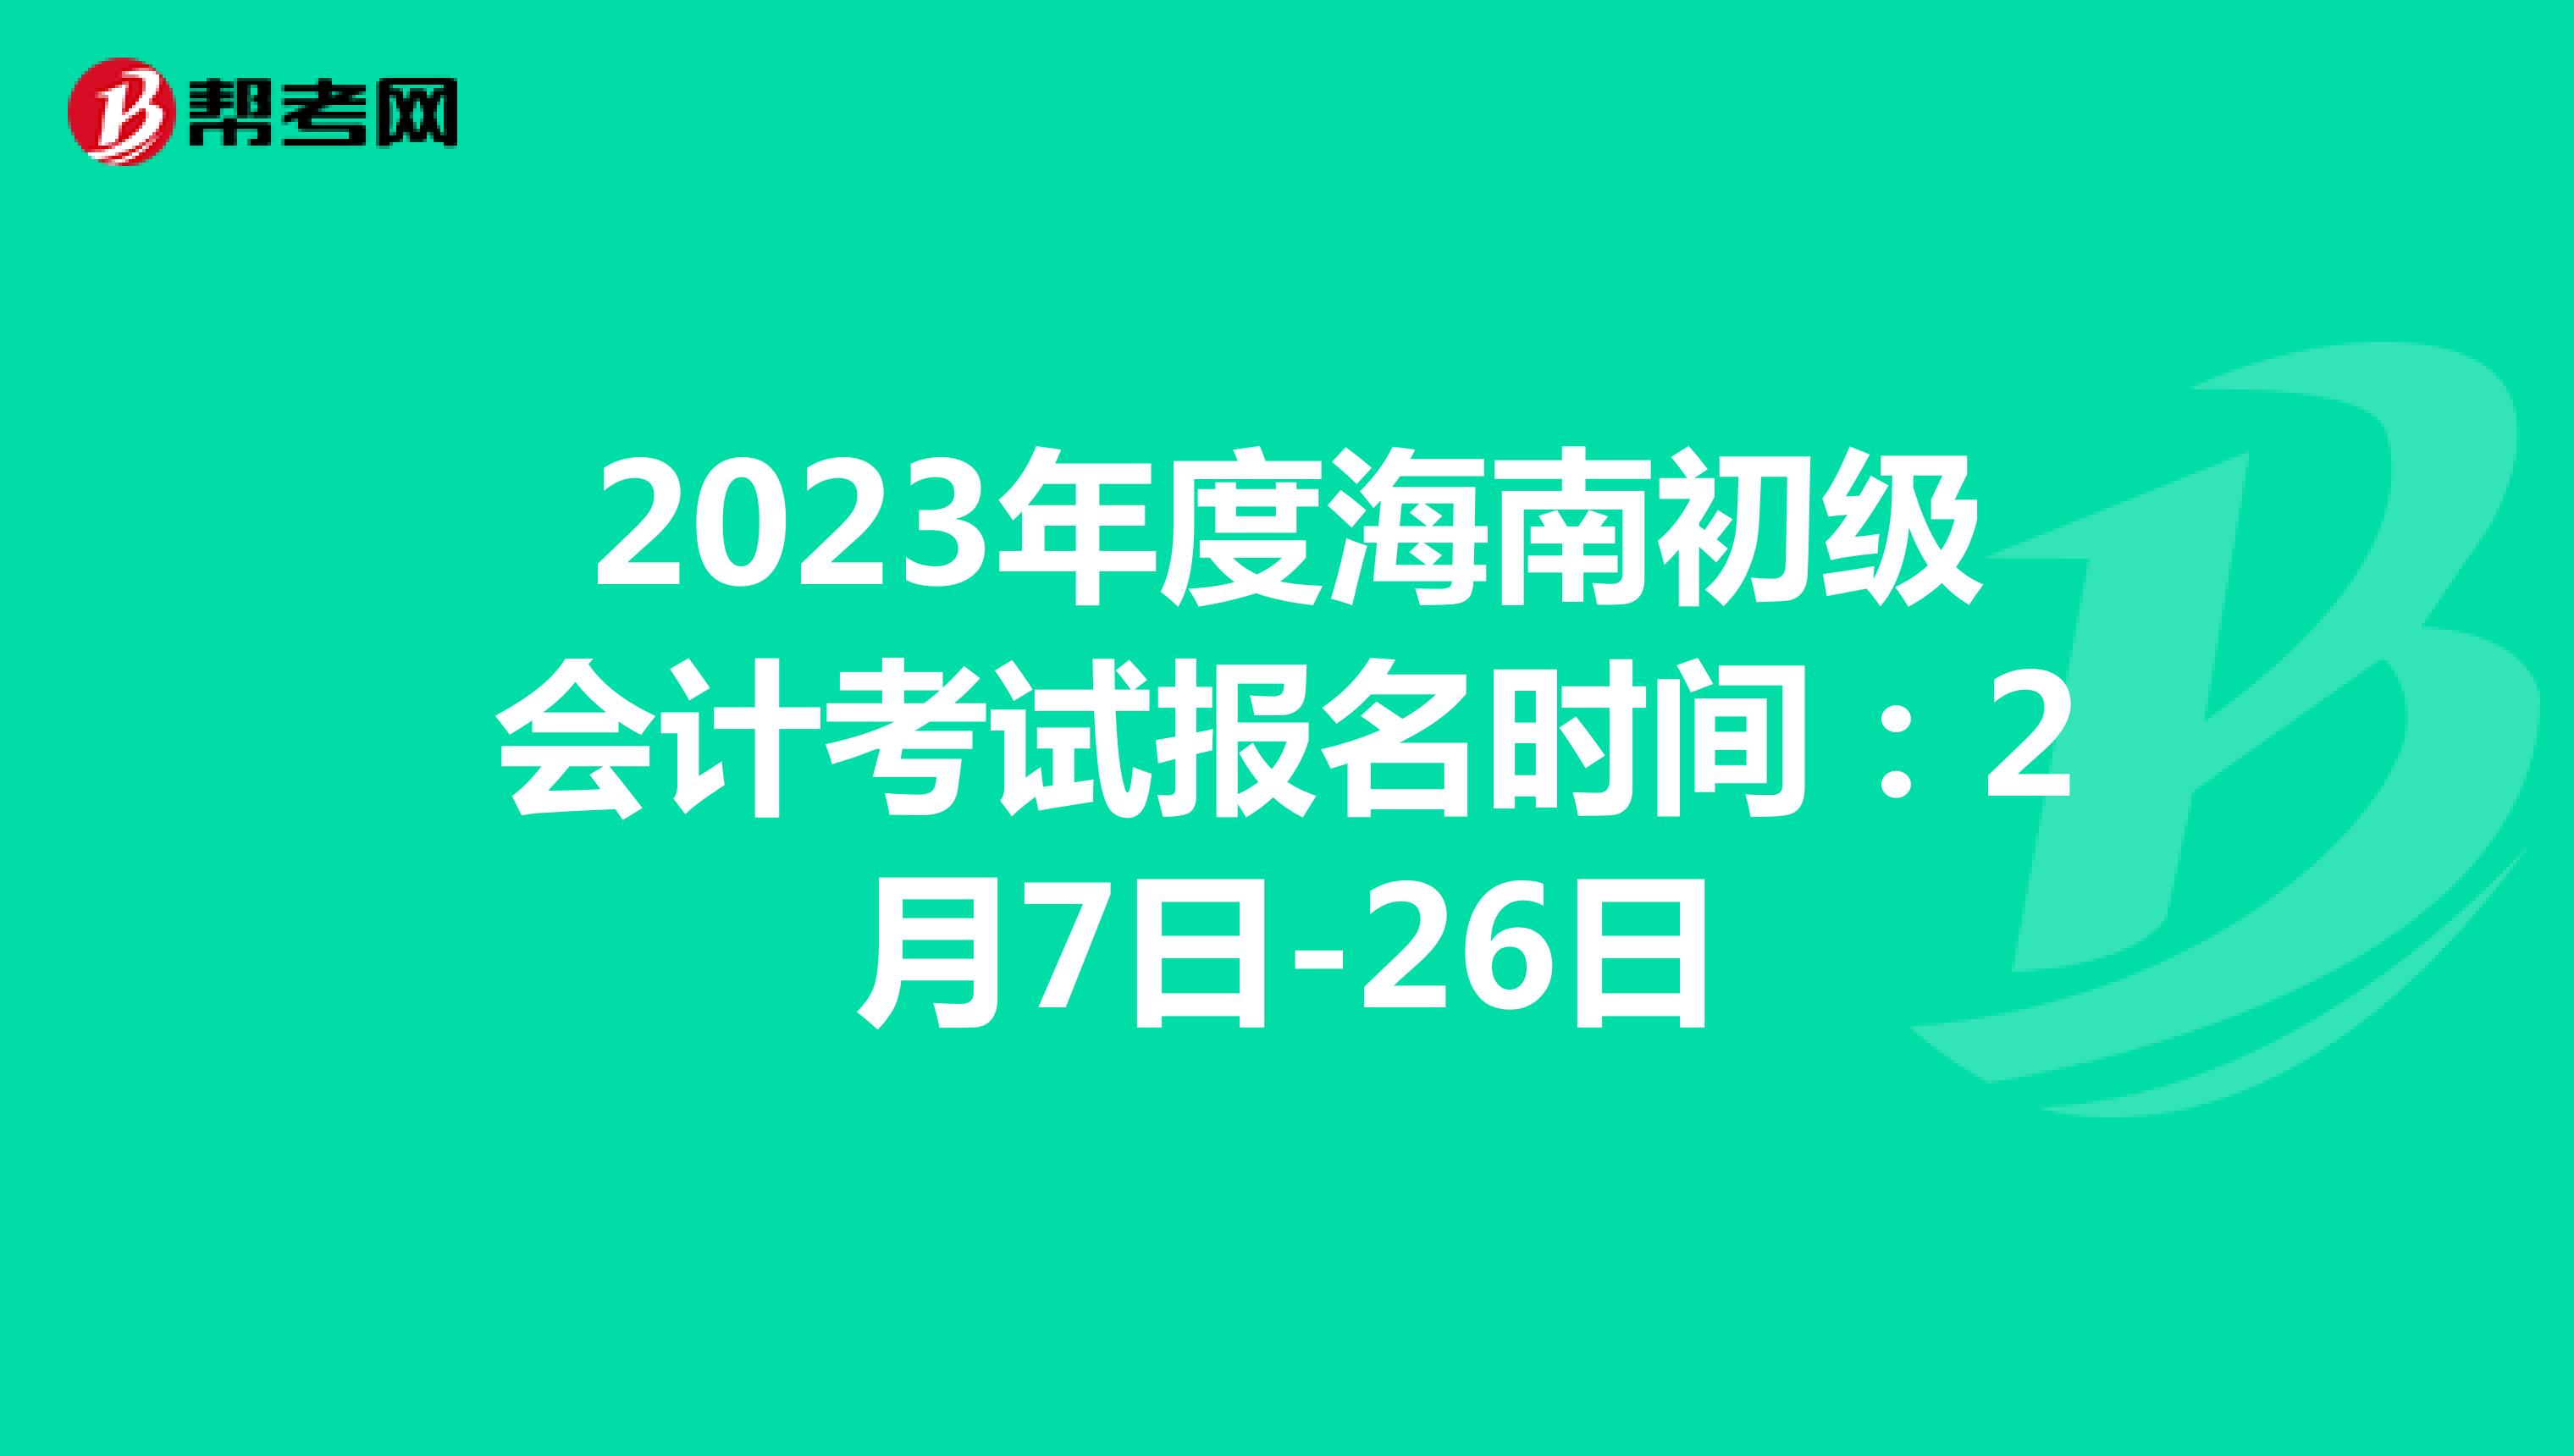 2023年度海南初级会计考试报名时间：2月7日-26日